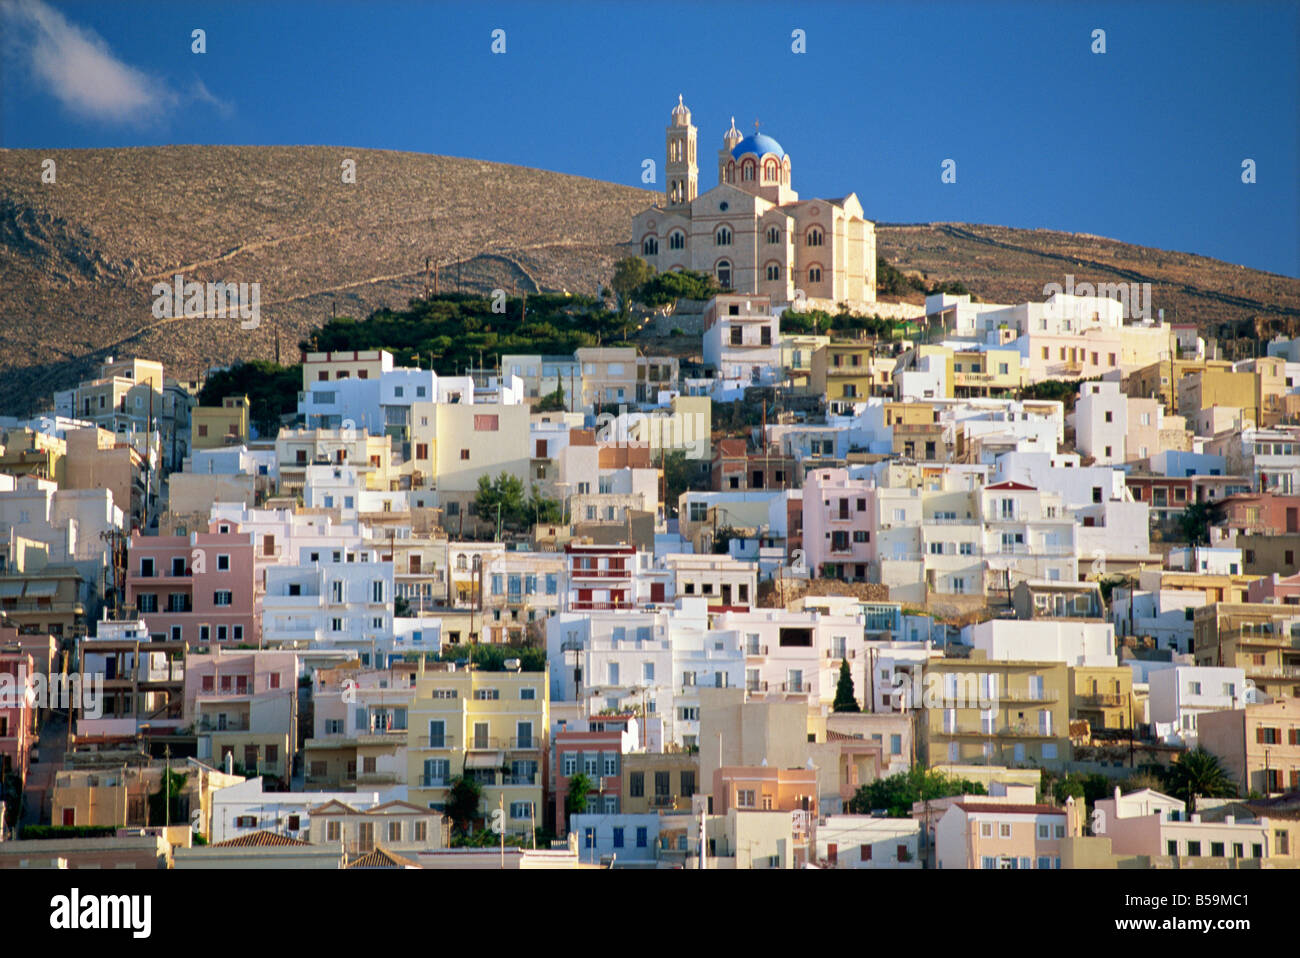 Sur les toits de la ville et l'église de la ville d'Ermoupolis Syros Cyclades Anastasis îles grecques Grèce Europe Banque D'Images